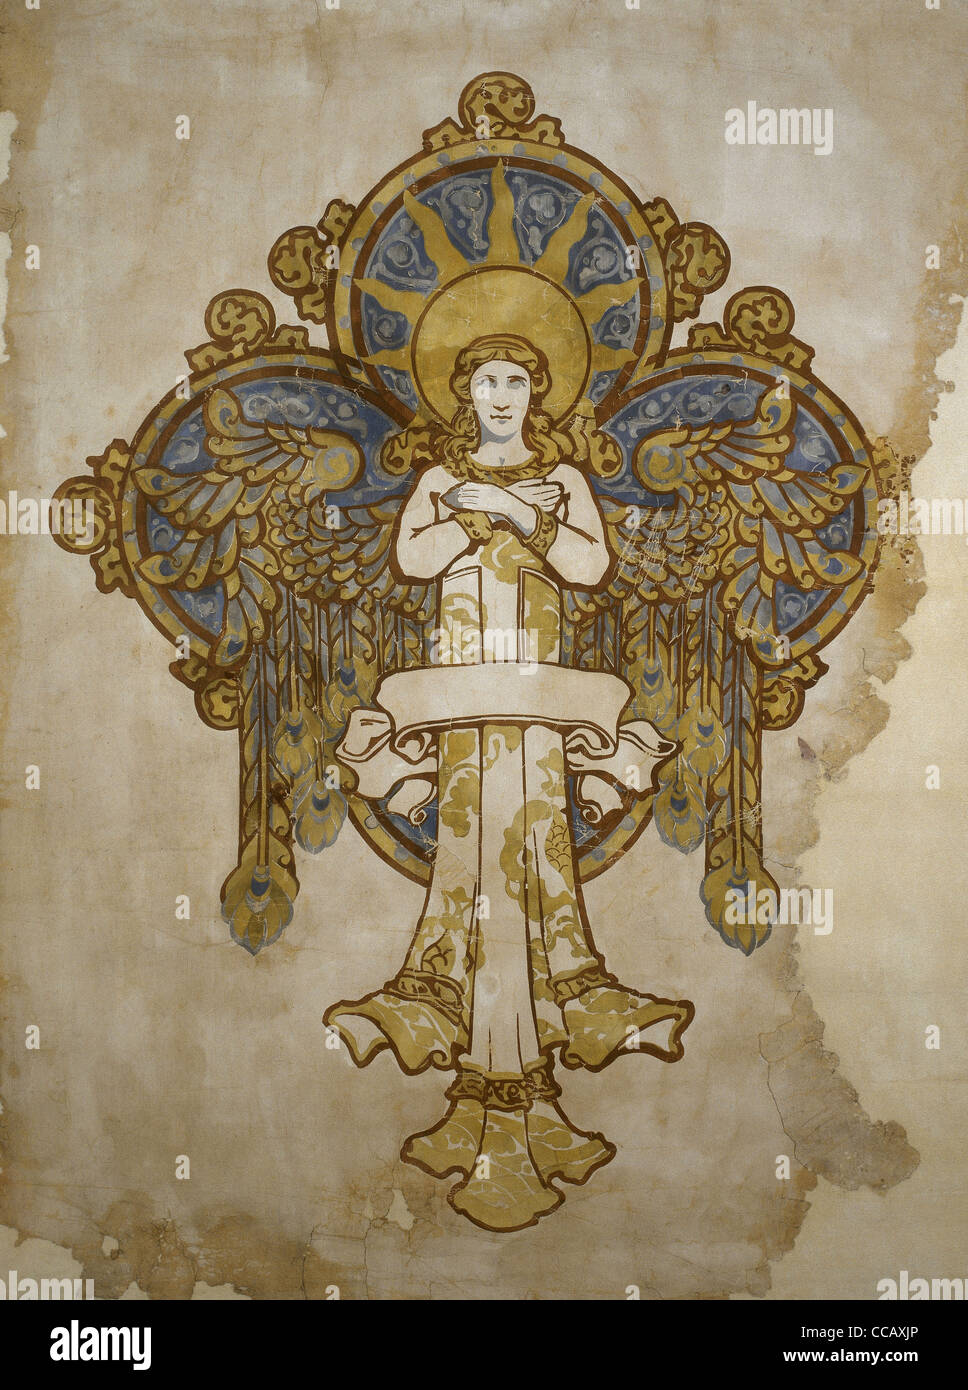 Croquis original représentant un ange, pour la décoration de l'Université pontificale Comillas. Comillas. La Cantabrie. L'Espagne. Banque D'Images